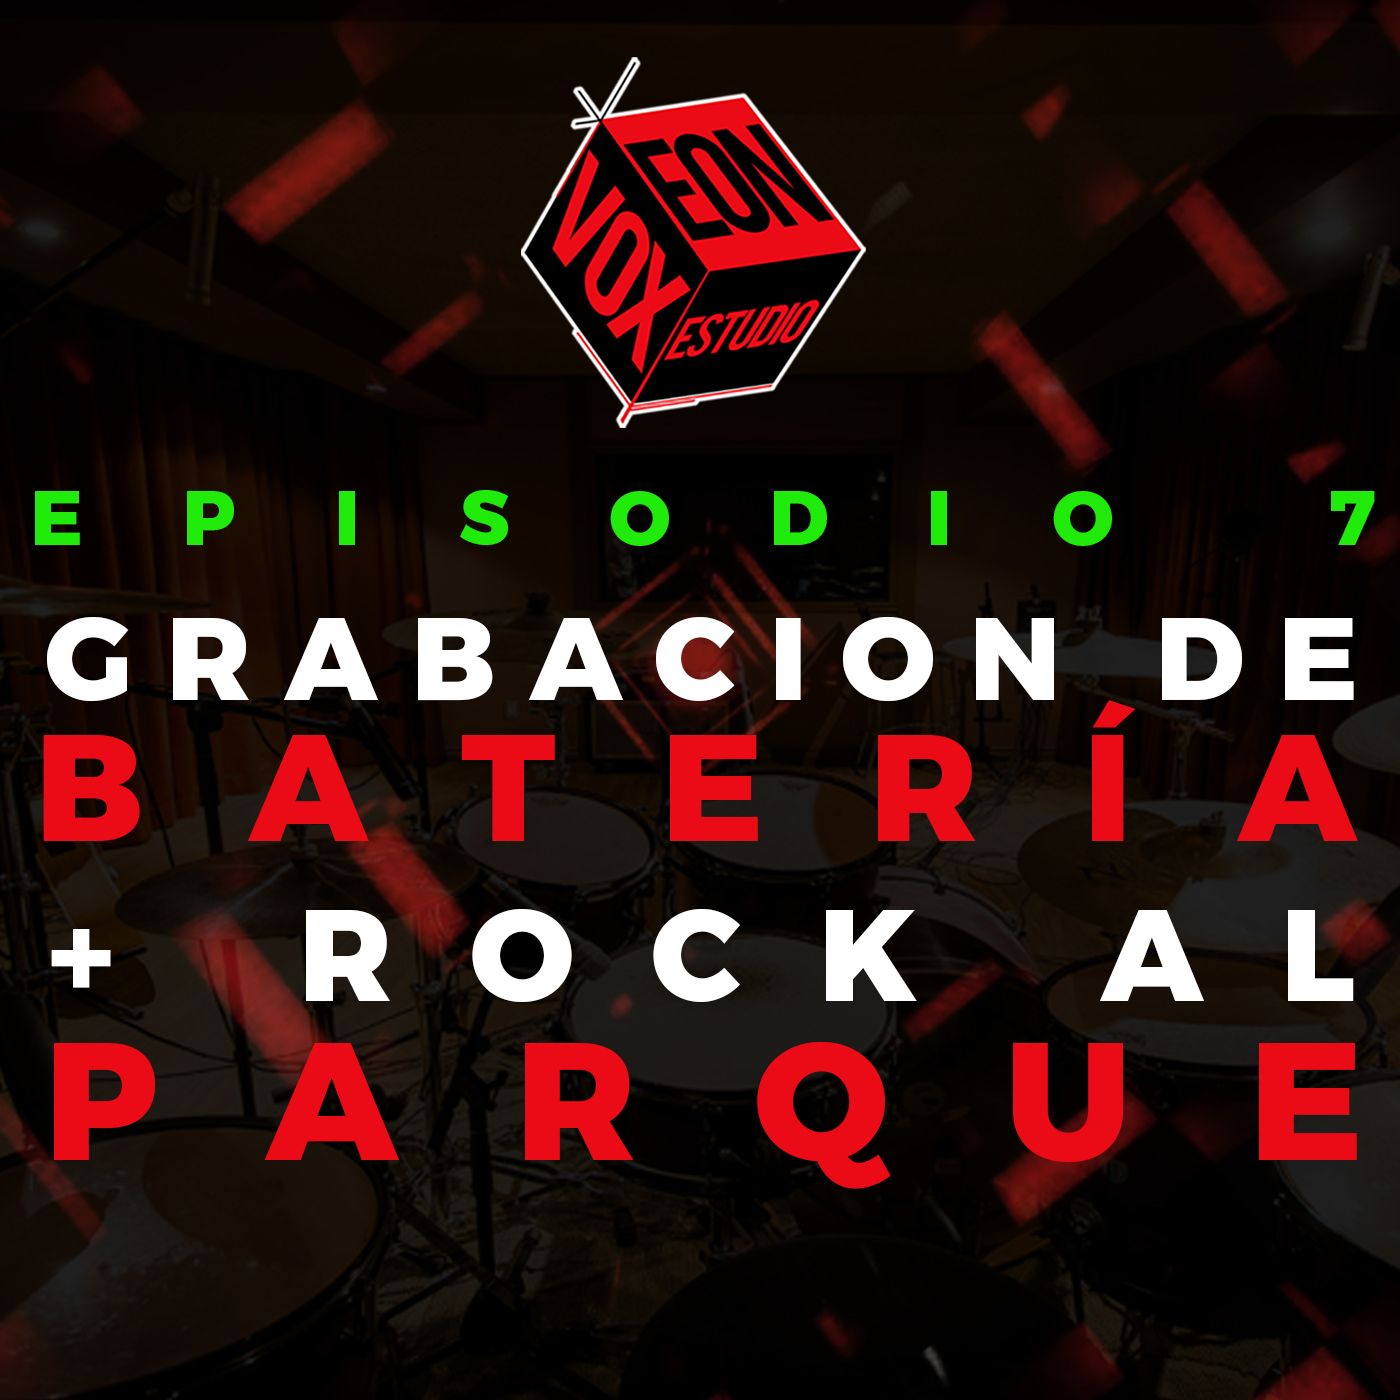 Grabación de Batería + Rock al Parque '22